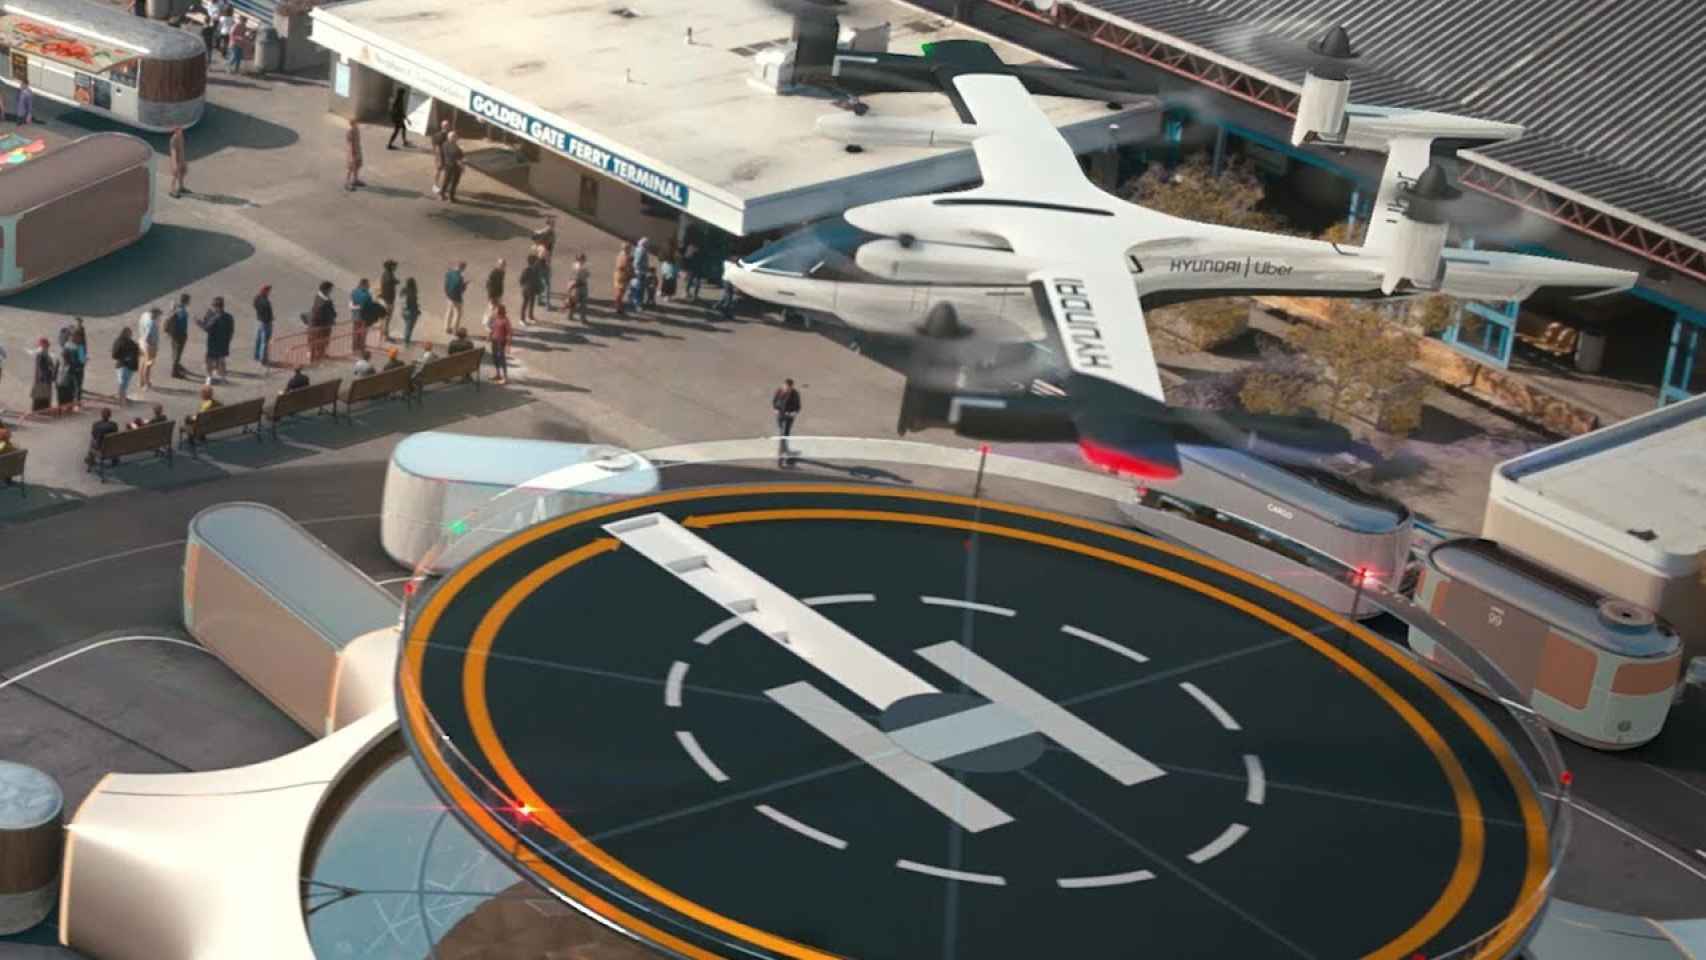 Imagen de cómo sería una estación donde se podrían solicitar los vehículos voladores.